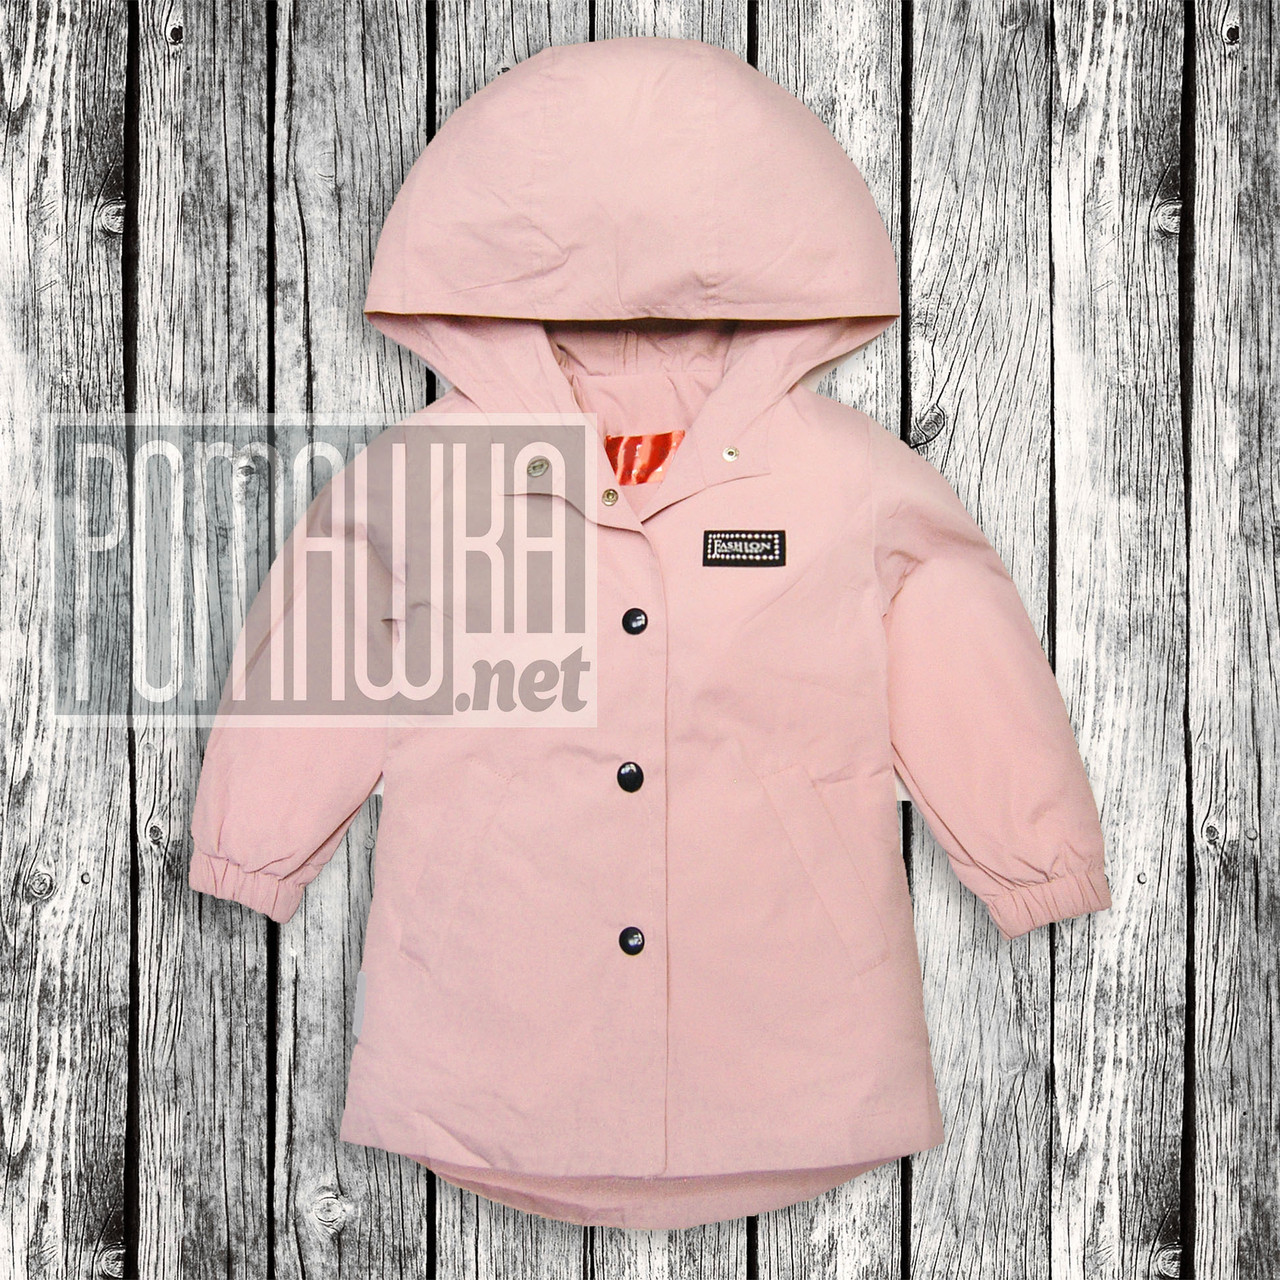 Дитяча р 98 (92) 2-3 роки куртка подовжена вітровка парку для дівчинки тонка капюшон трикотаж 6065 Рожевий